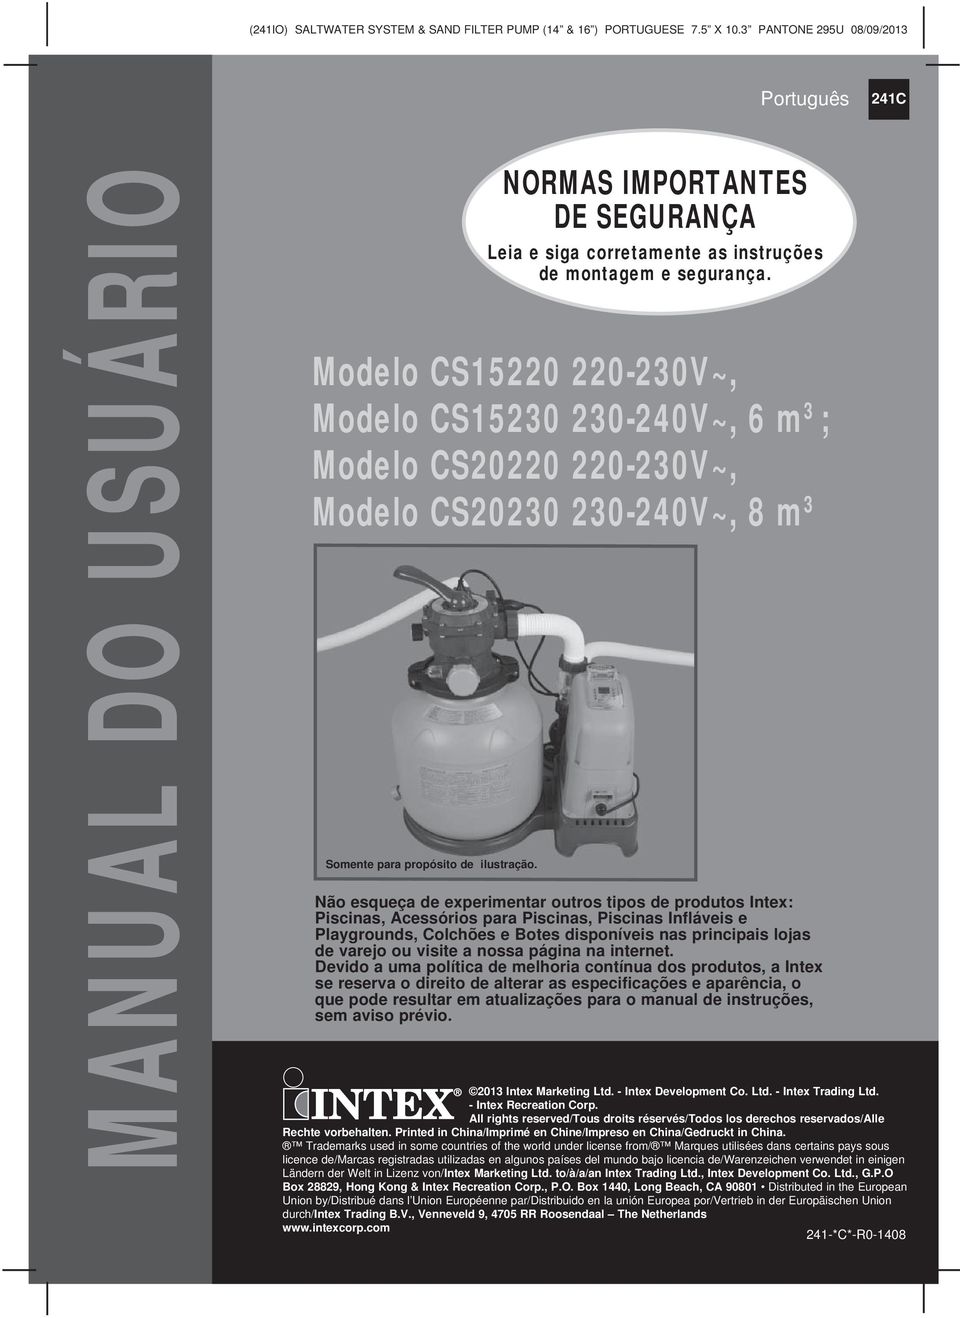 Насос по английски. Intex Sand Filter Pump sf80220-2. Intex Sand Filter Pump manual. Песочный фильтр для бассейна Intex sf15220. Фильтр для бассейна песочный Интекс 15220.